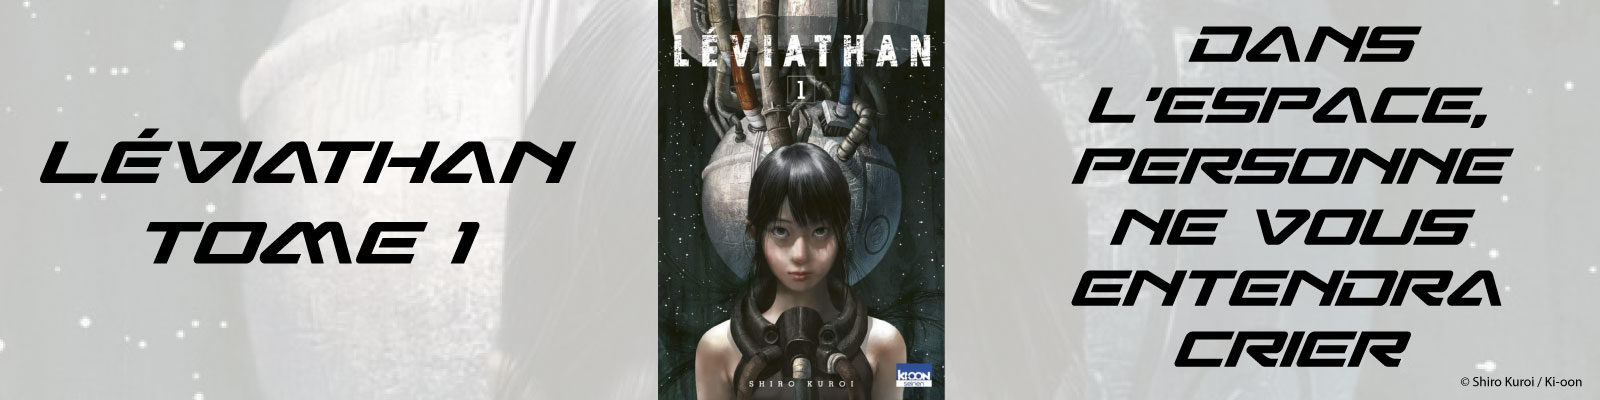 Leviathan-Vol.-1